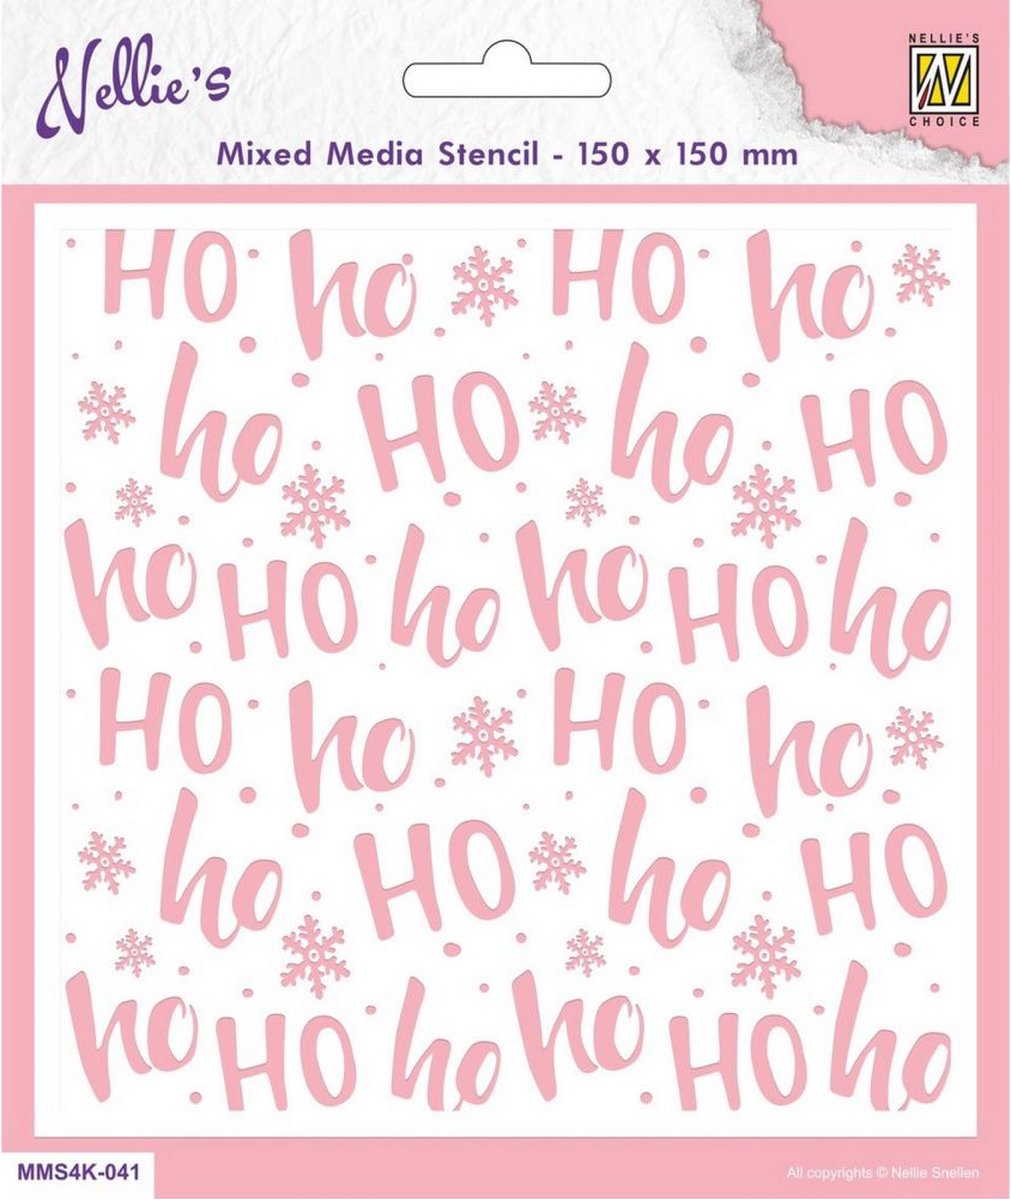 Nellies Choice Mixed Media Stencils vierkant Ho Ho MMS4K-041 150x150mm (11-22)